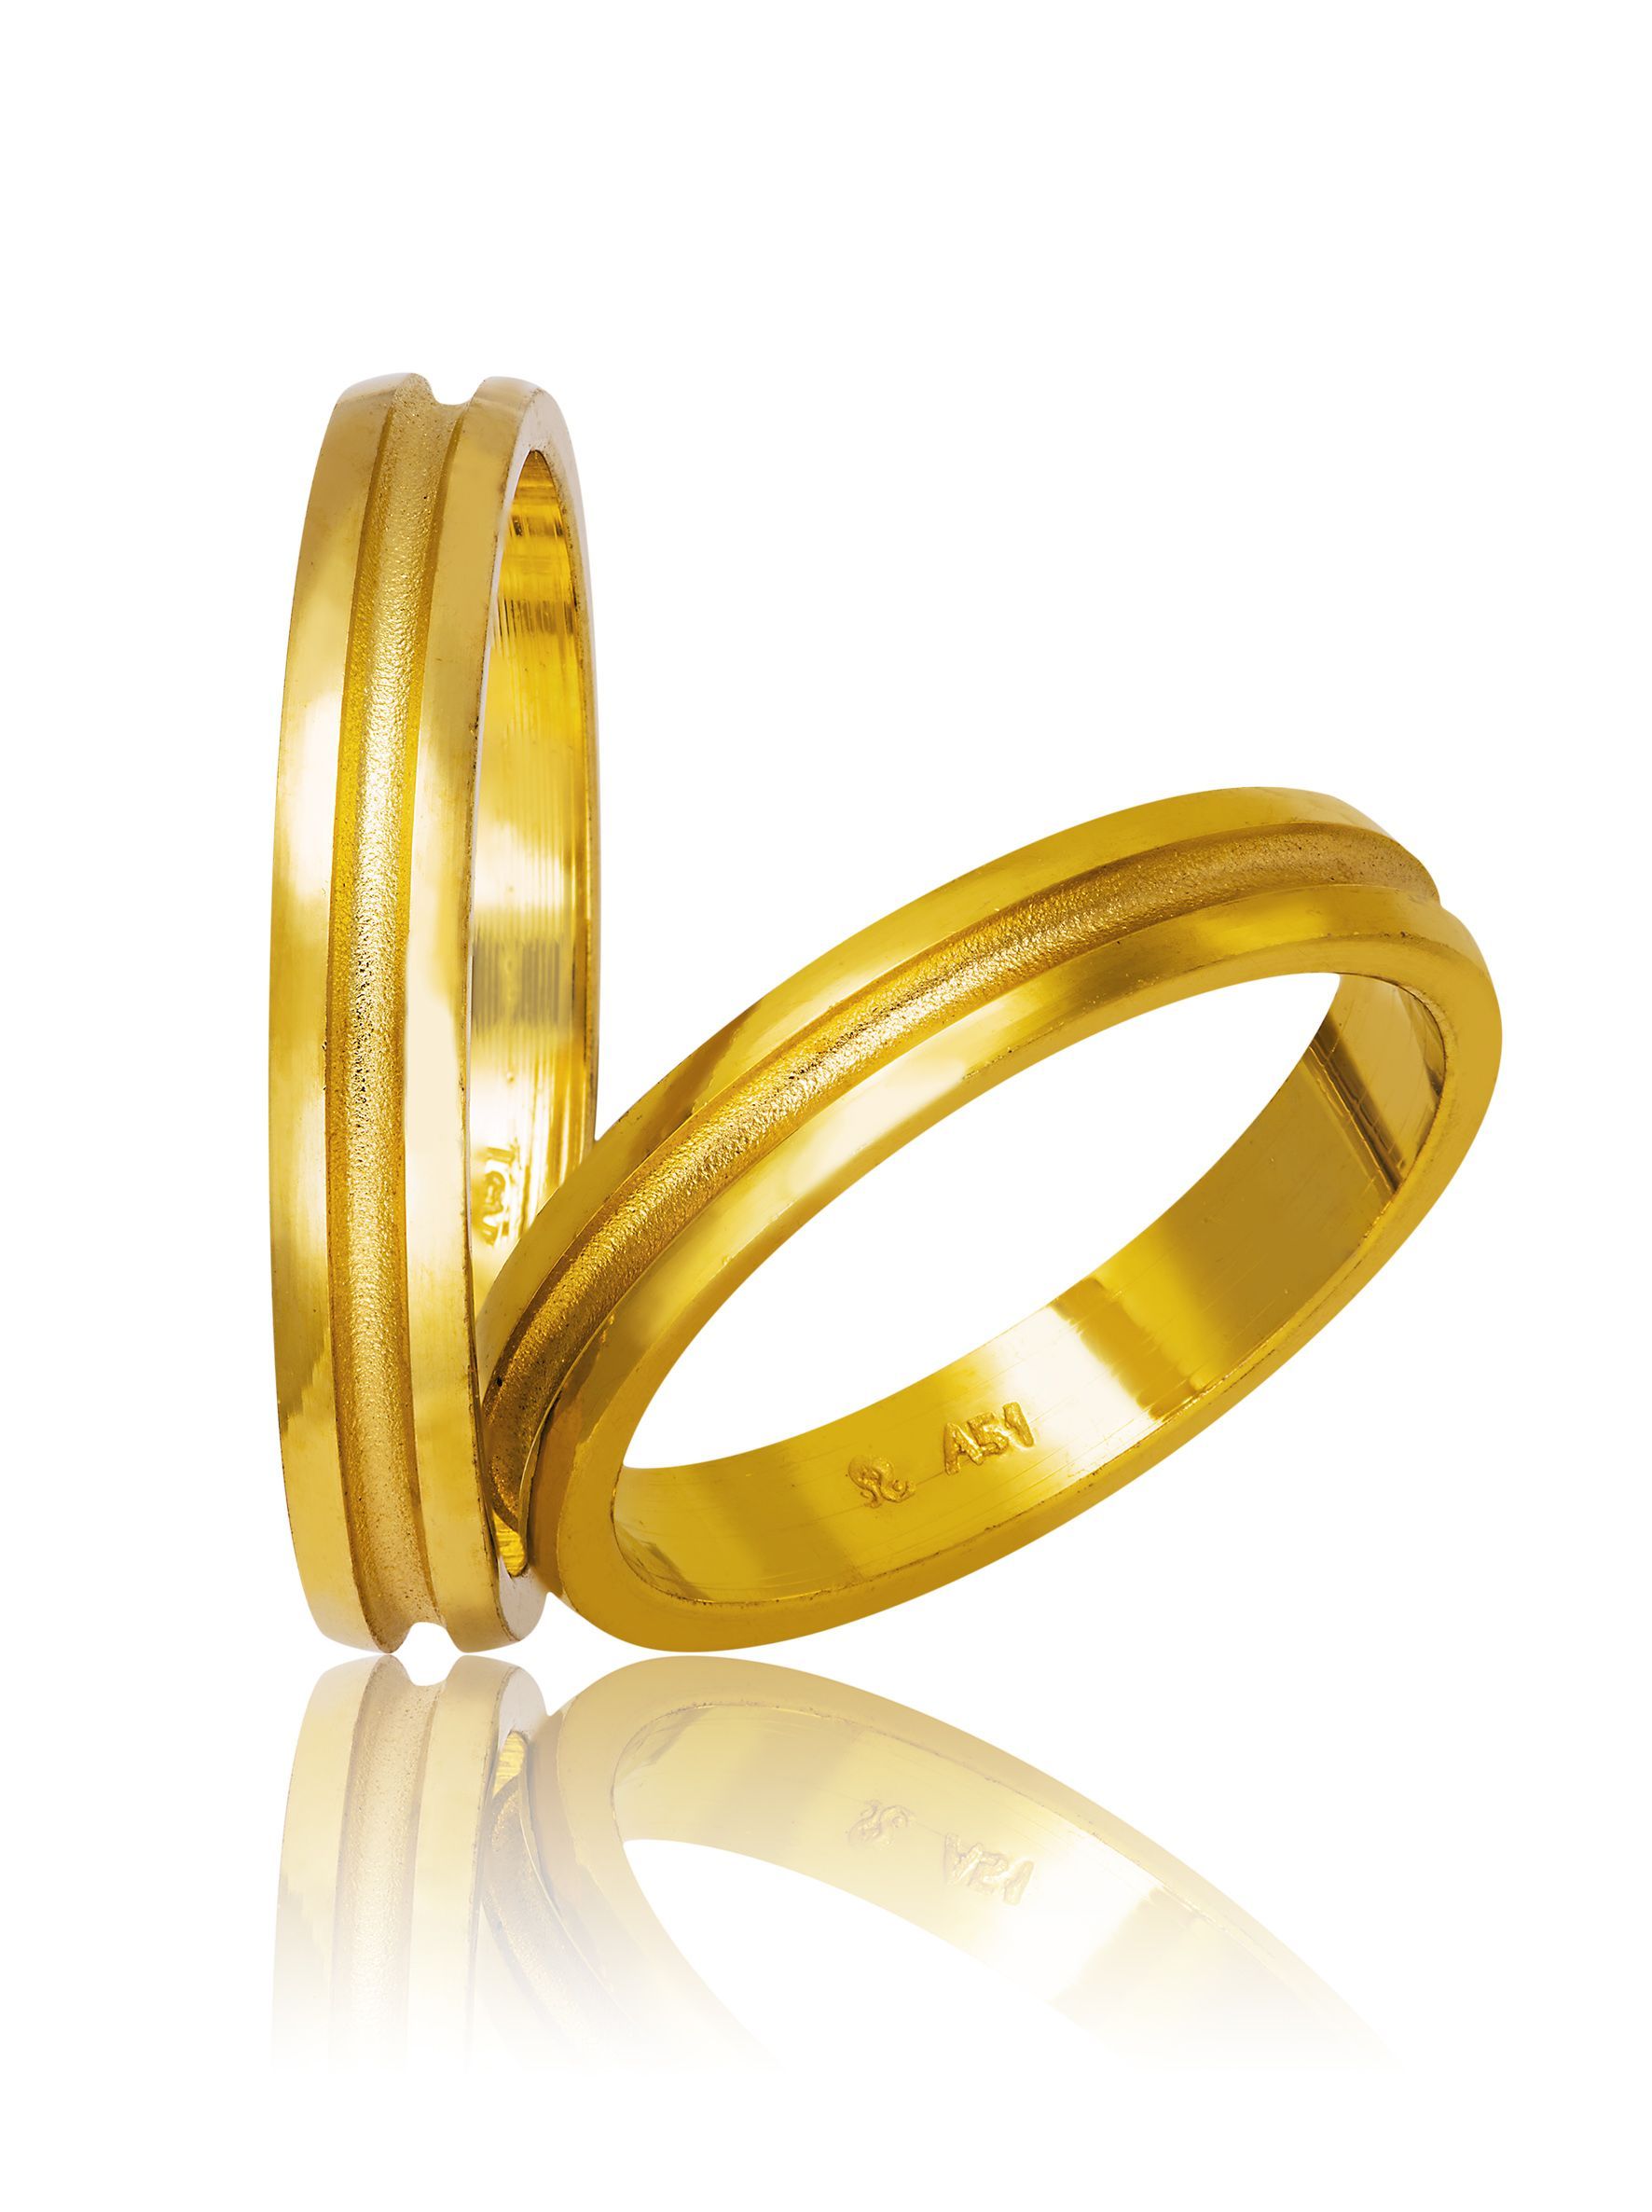 Βέρες γάμου απο χρυσό 3.5mm λουστρέ με σαγρέ αυλάκι στο κέντρο (code 750)